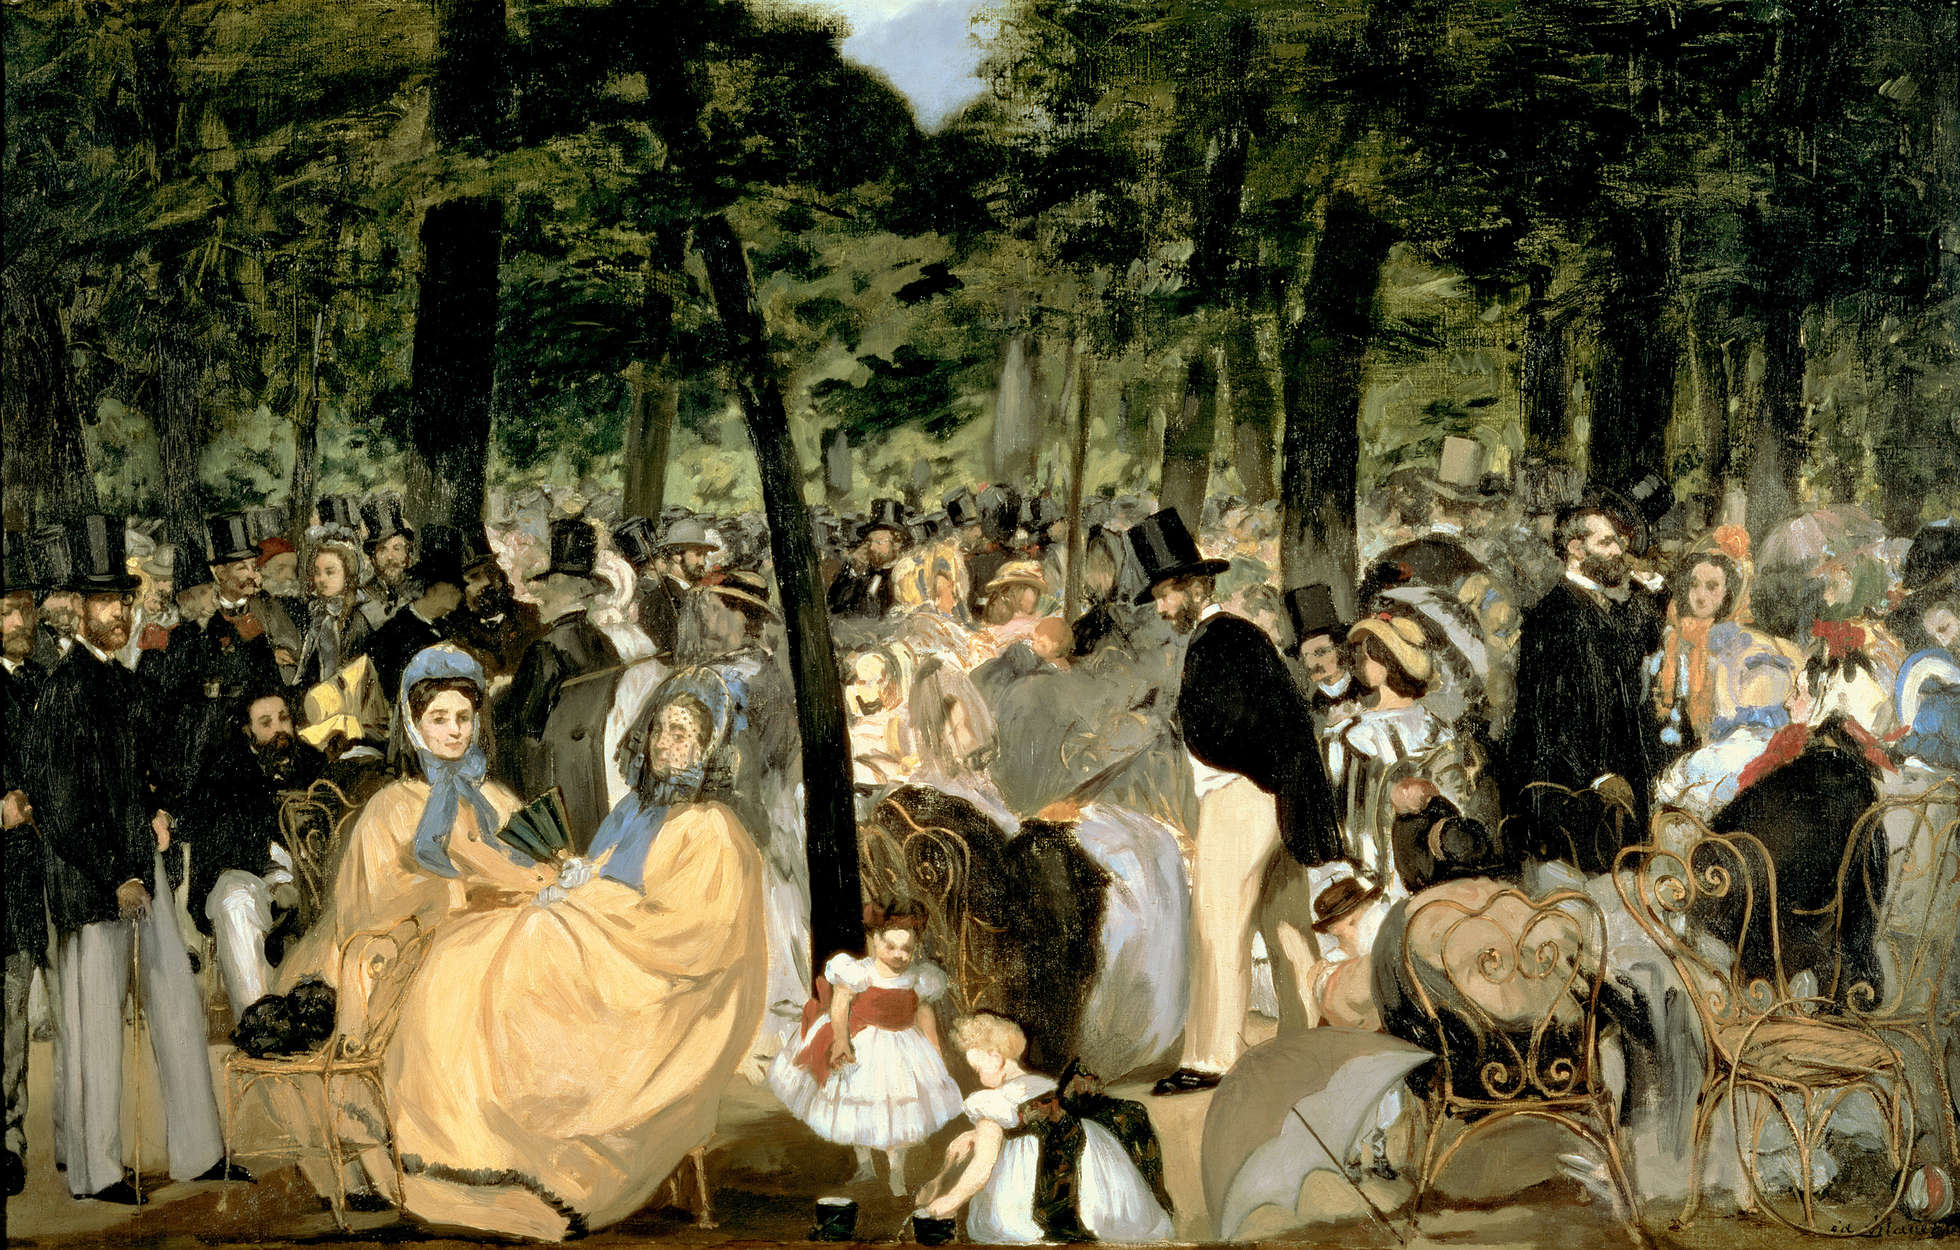             Muziek in de Tuinen van de Tuilerieën" muurschildering van Edouard Manet
        